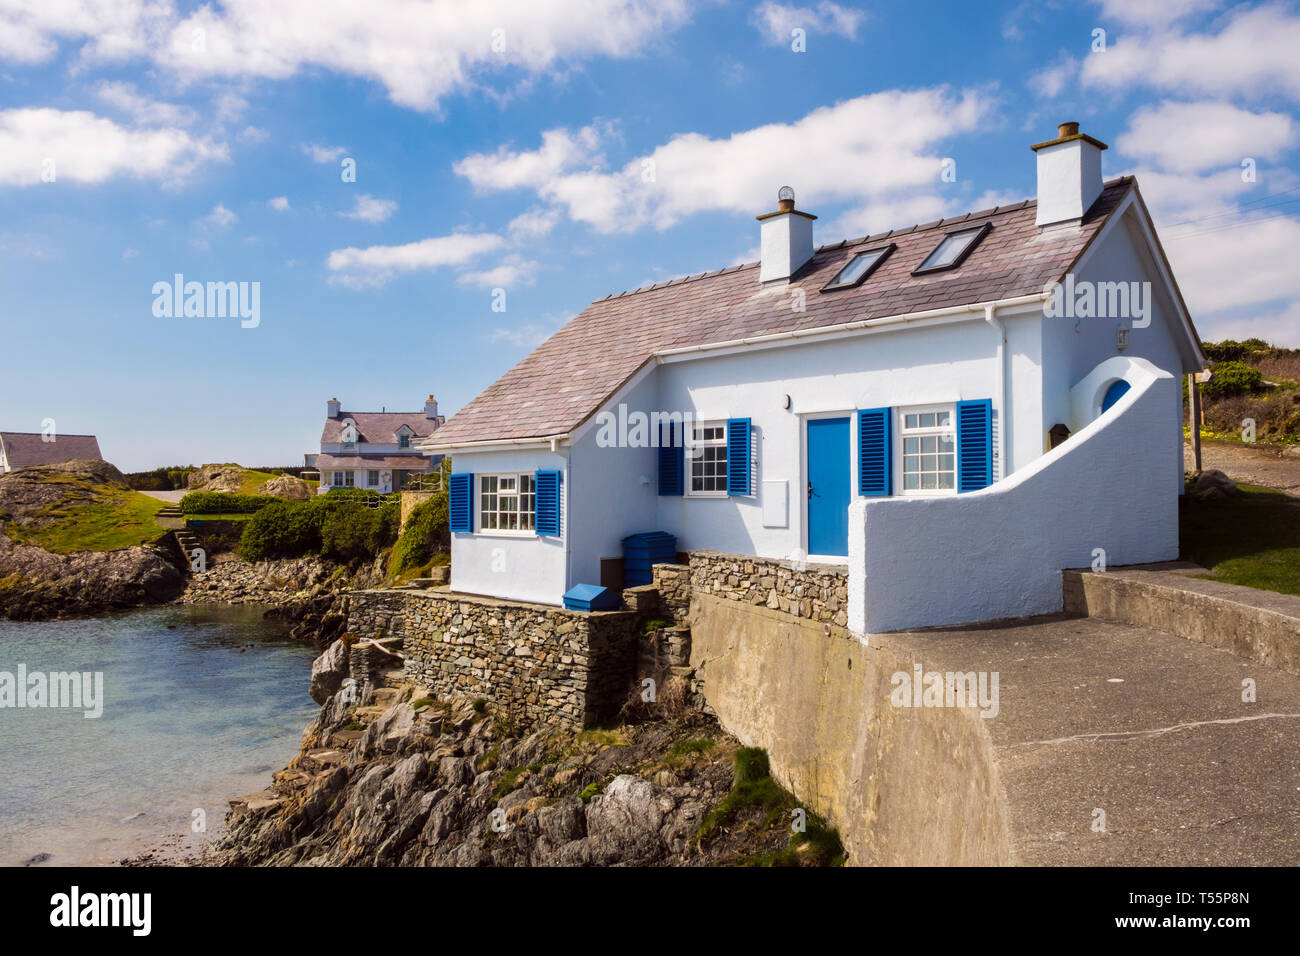 Welsh tradizionali bianco e blu cottage che si affaccia su una insenatura rocciosa nel villaggio costiero. Rhoscolyn, Isola Santa, Isola di Anglesey, Galles del Nord, Regno Unito, Gran Bretagna Foto Stock